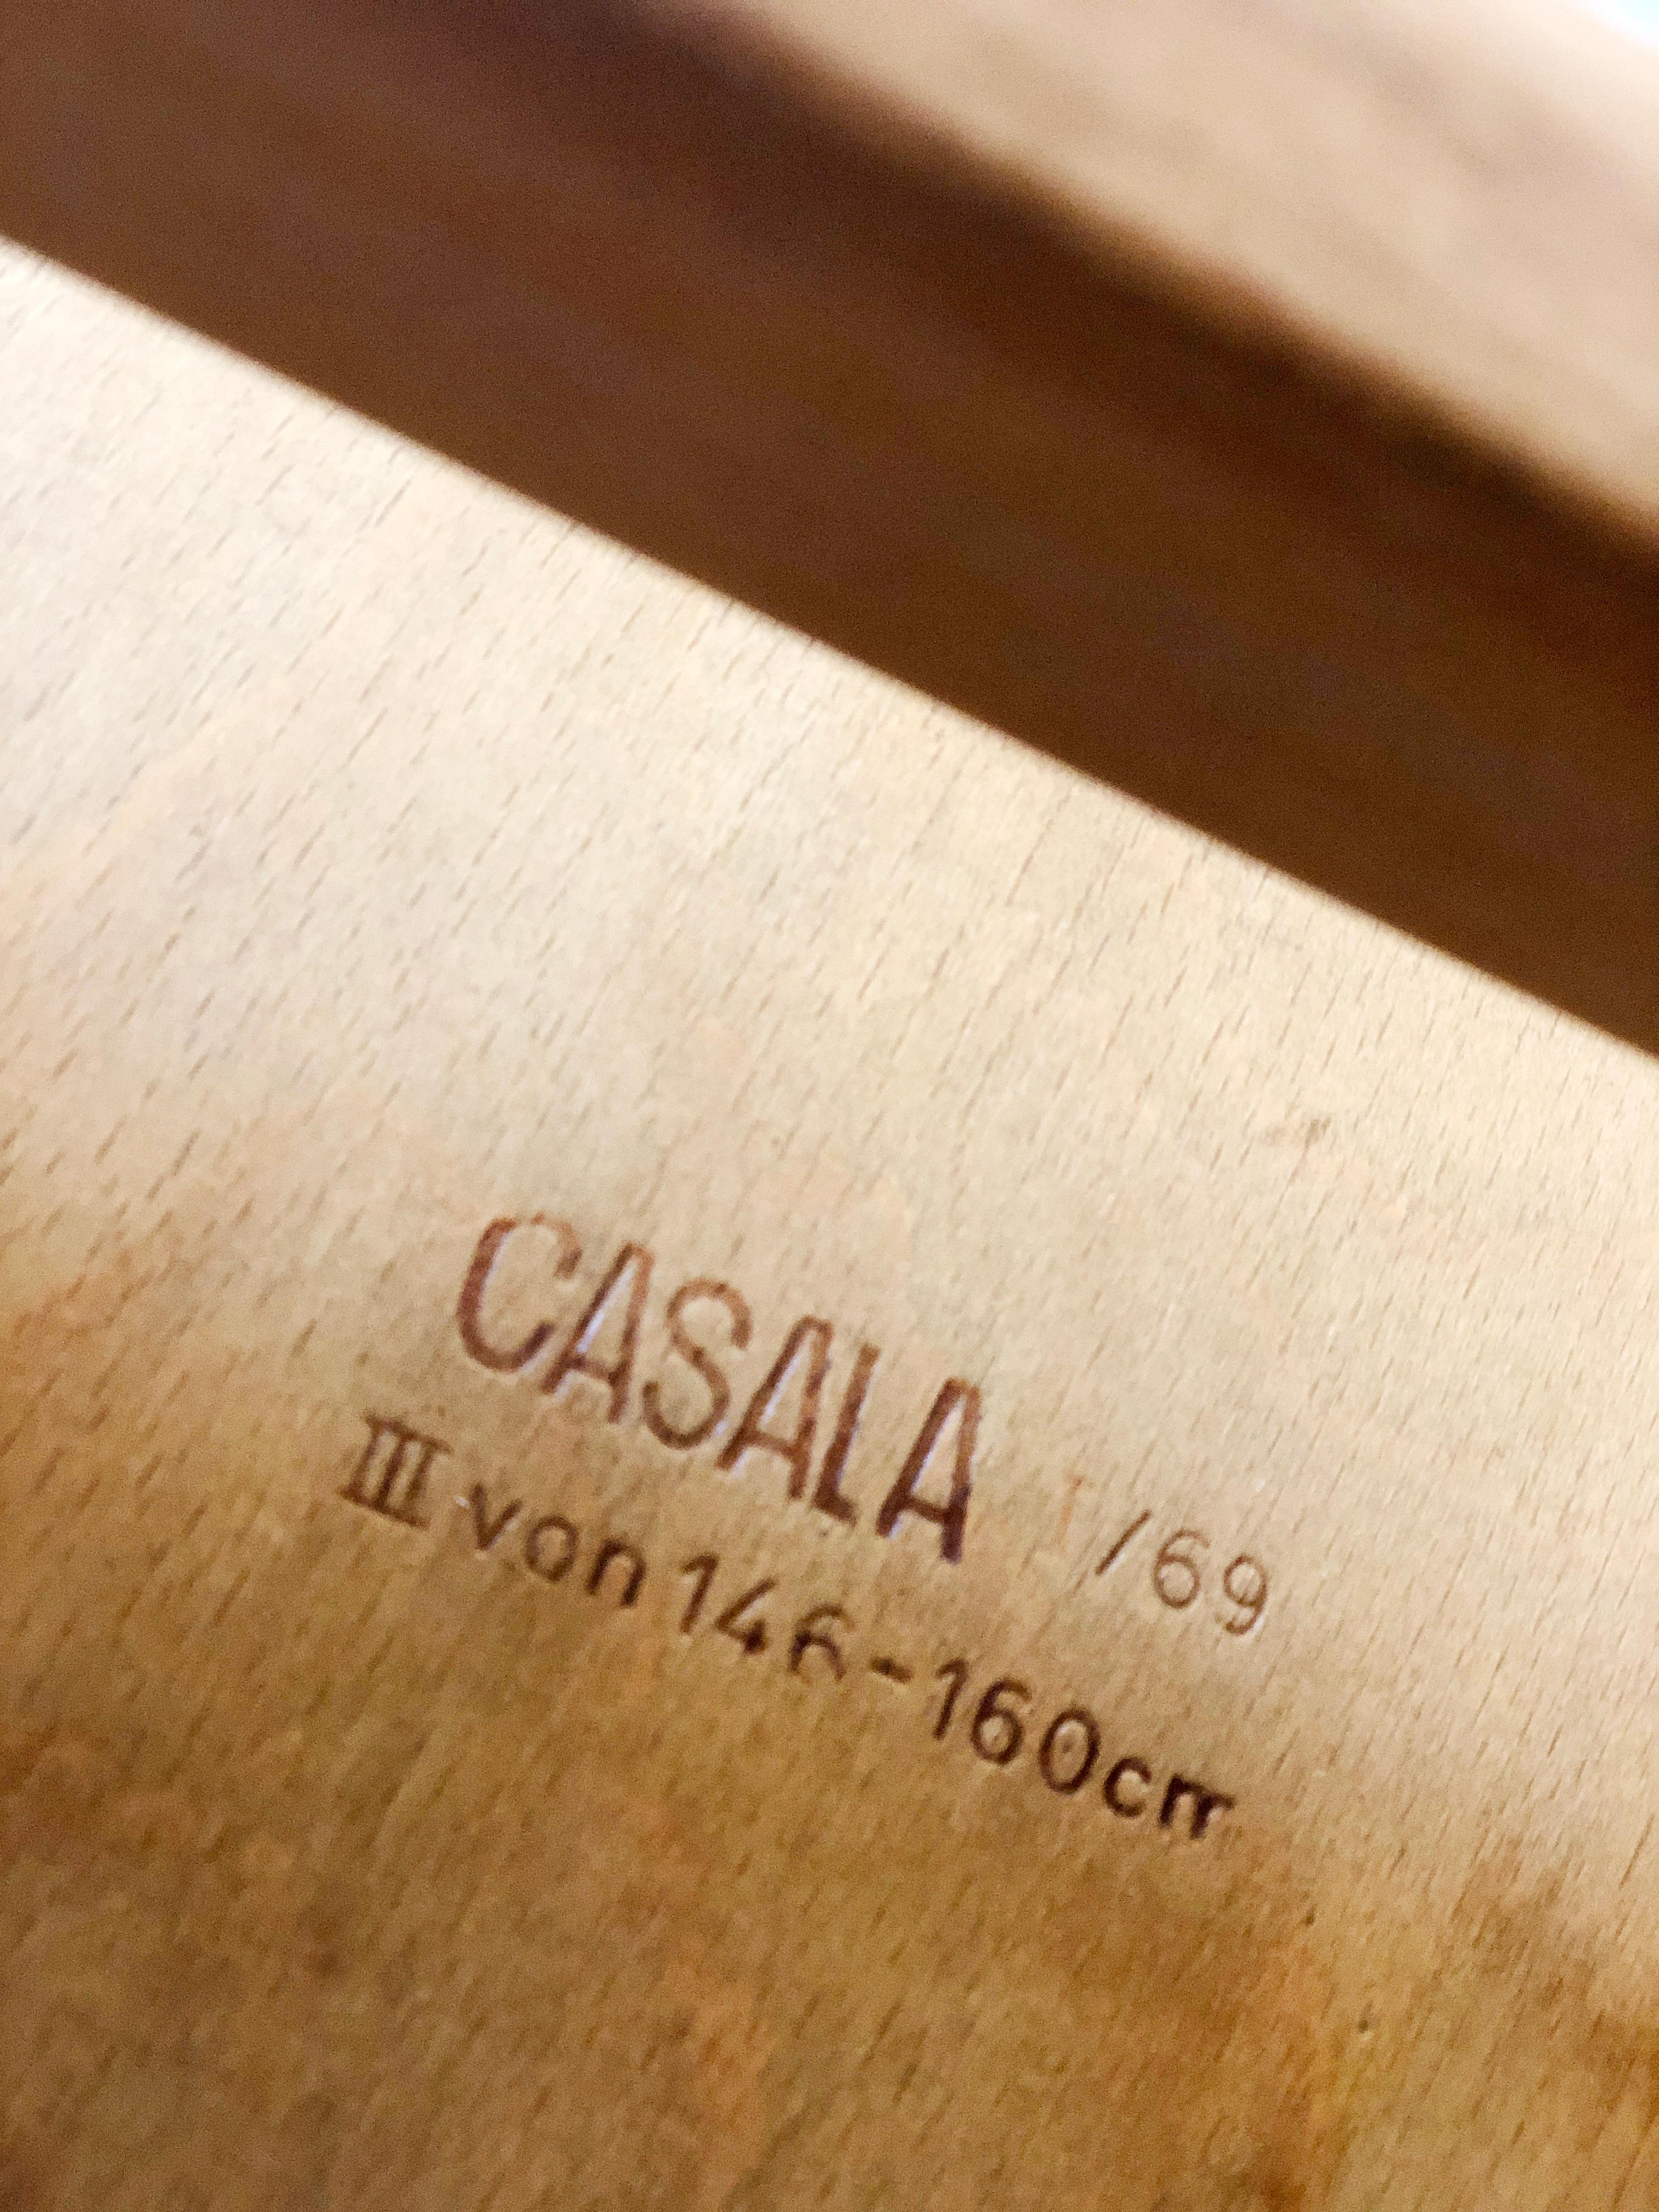 Kinderschullehrstuhl im mittleren Kindesalter. Dies ist ein klassisches Design von Karl Nothelfer aus dem Jahr 1967, hergestellt von Casala (Deutschland). CaSaLa wurde 1917 von CArl SAsse in LAuenau Deutschland gegründet. Der Stuhl ist in gutem